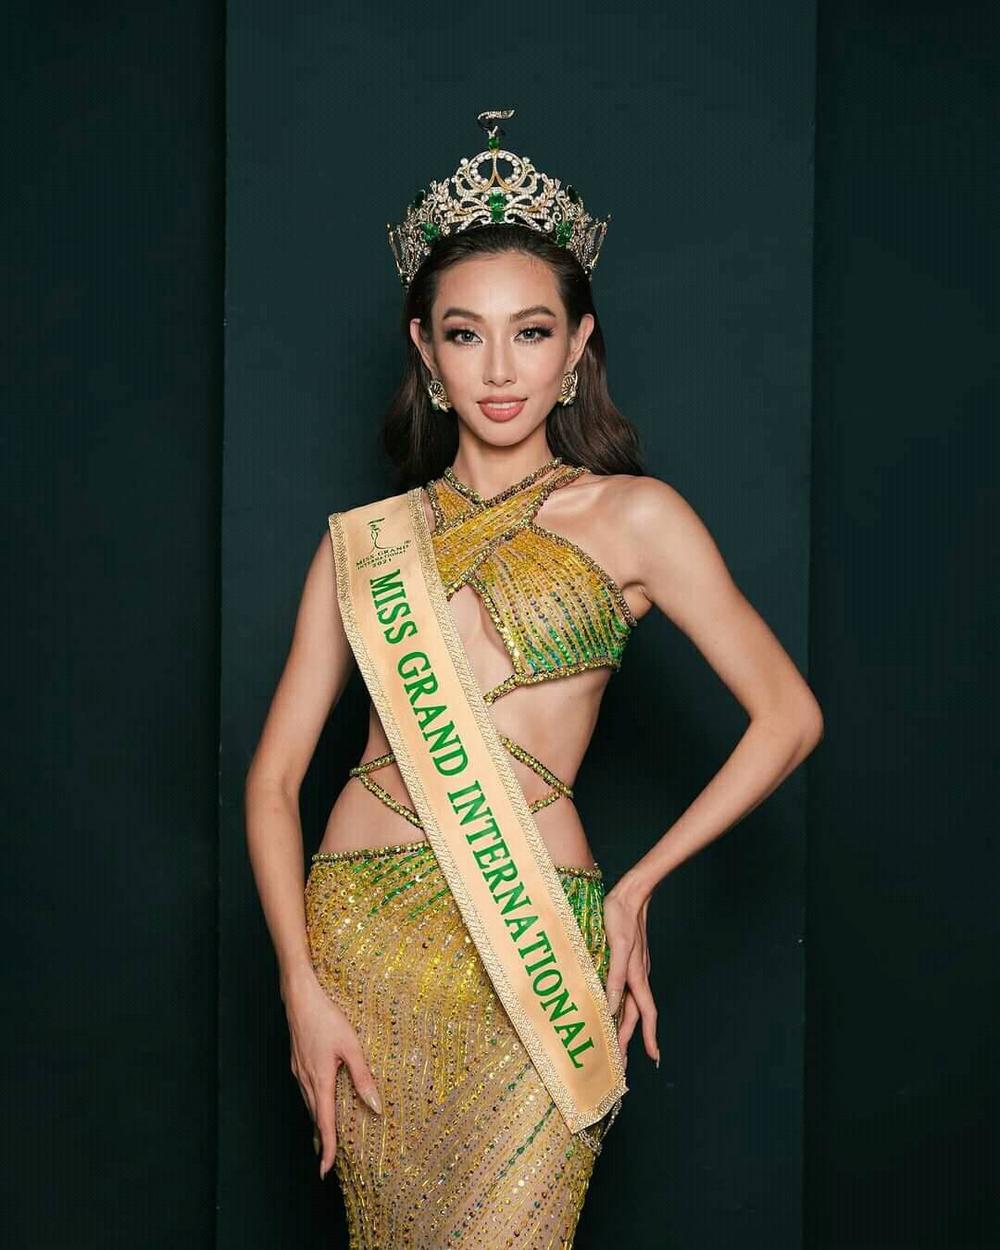  
Khung hình Nguyễn Thúc Thùy Tiên chính thức làm ảnh đại diện ở Miss Grand International. - Tin sao Viet - Tin tuc sao Viet - Scandal sao Viet - Tin tuc cua Sao - Tin cua Sao